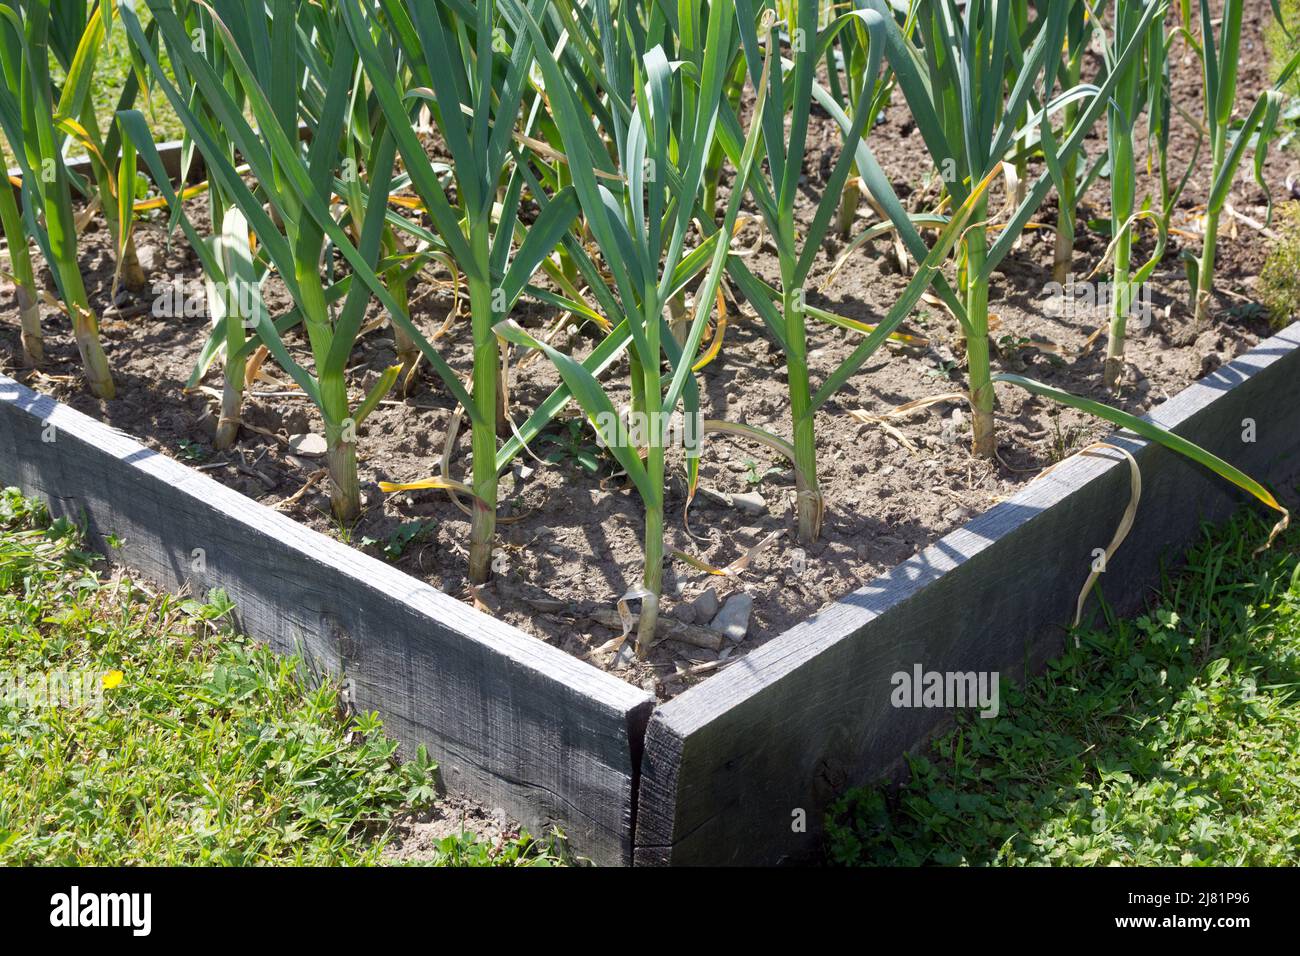 Garlic plants in a vegetable garden Stock Photo